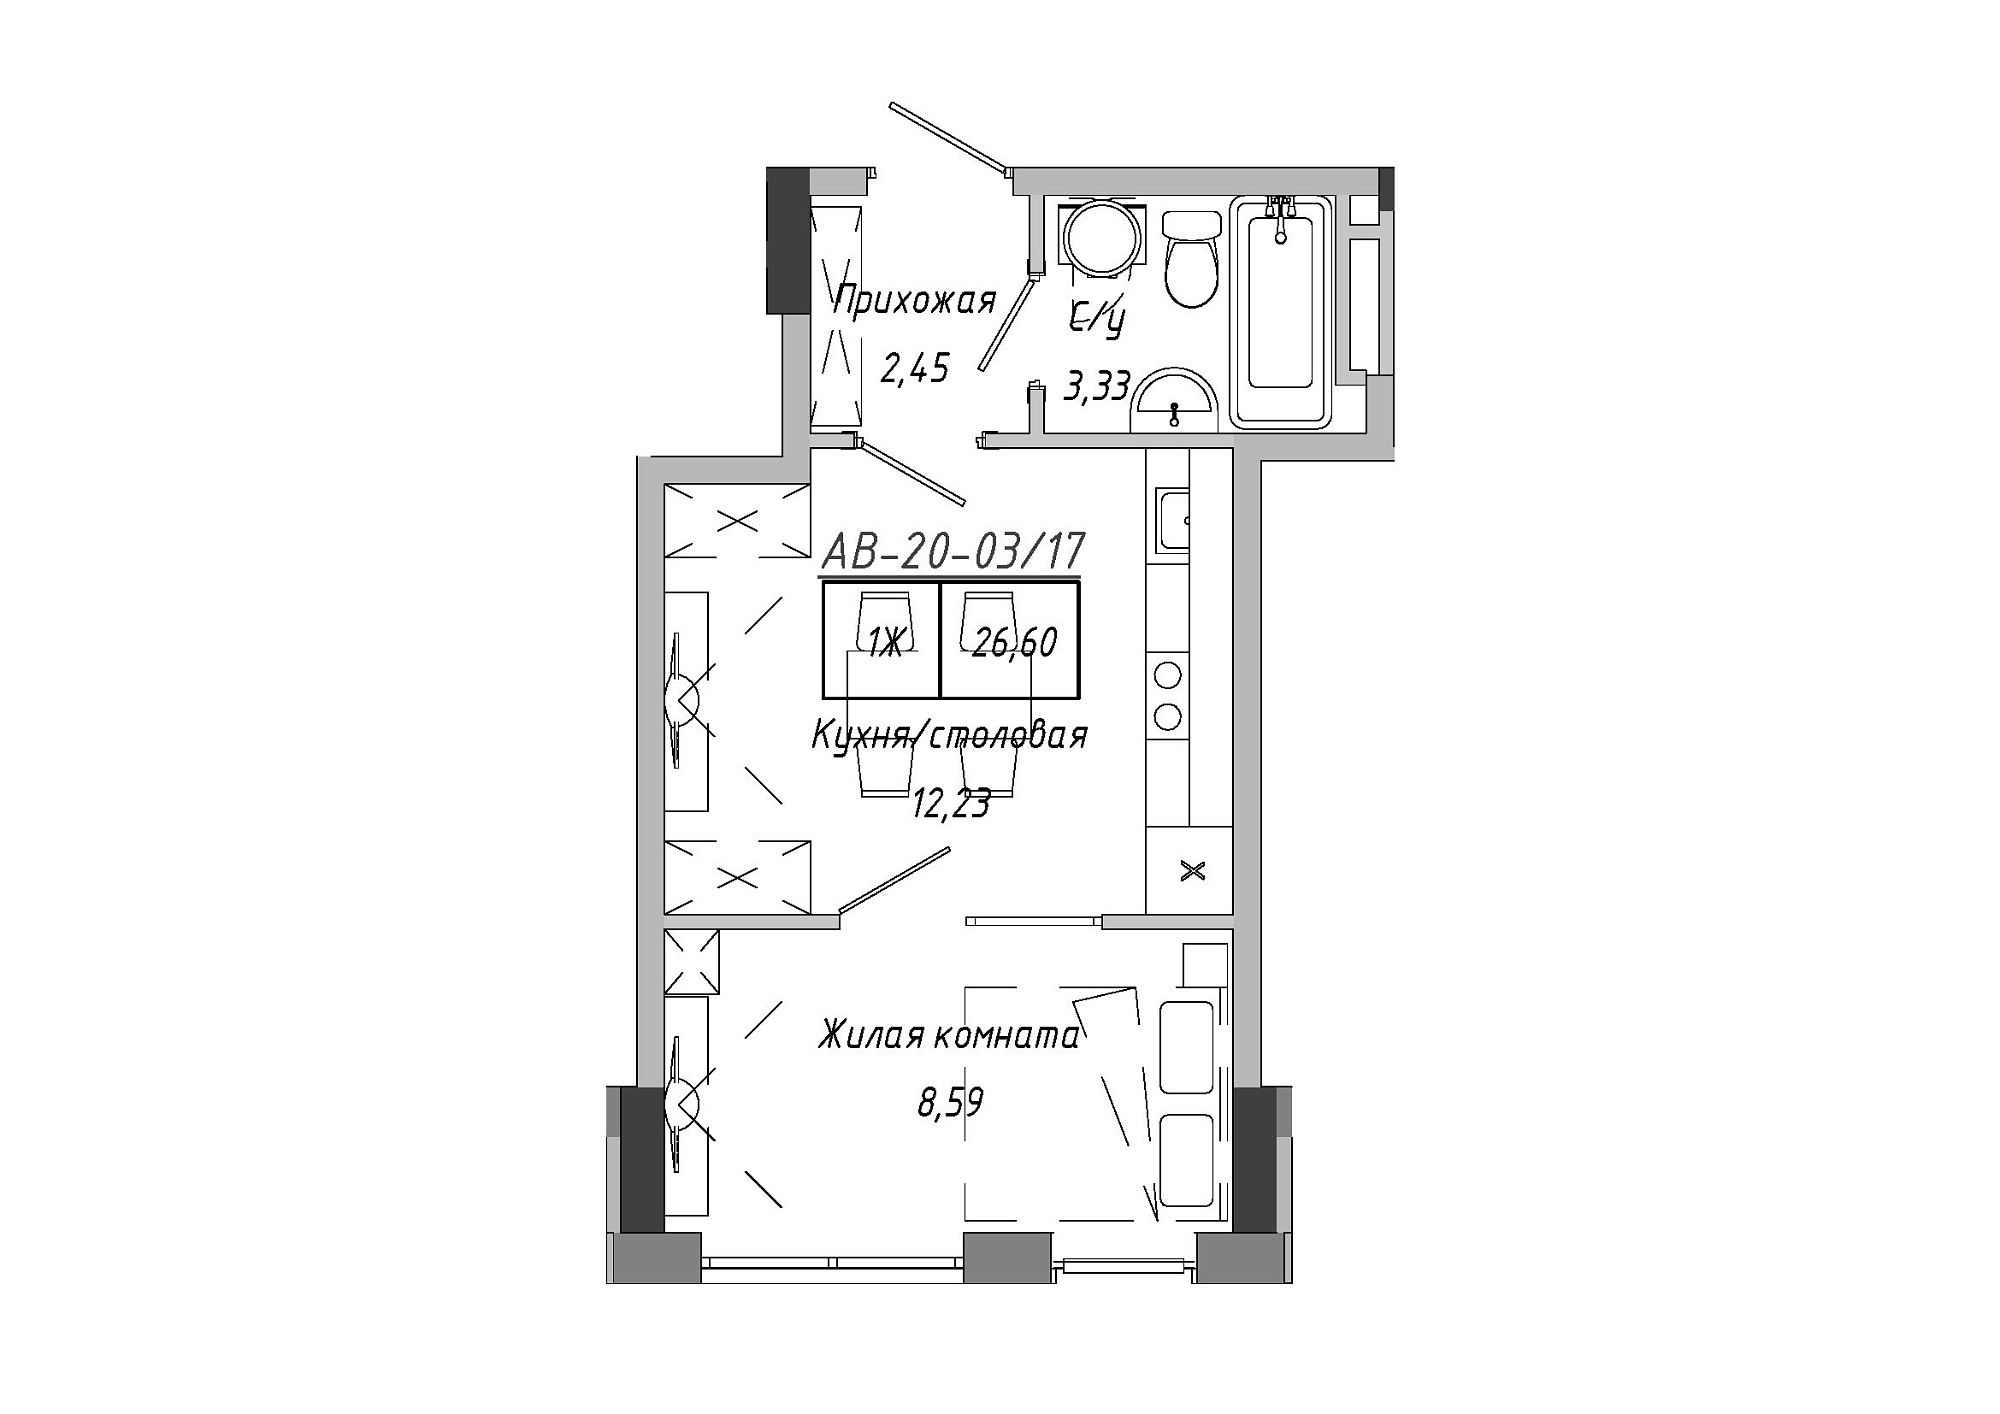 Планування 1-к квартира площею 26.6м2, AB-20-03/00017.